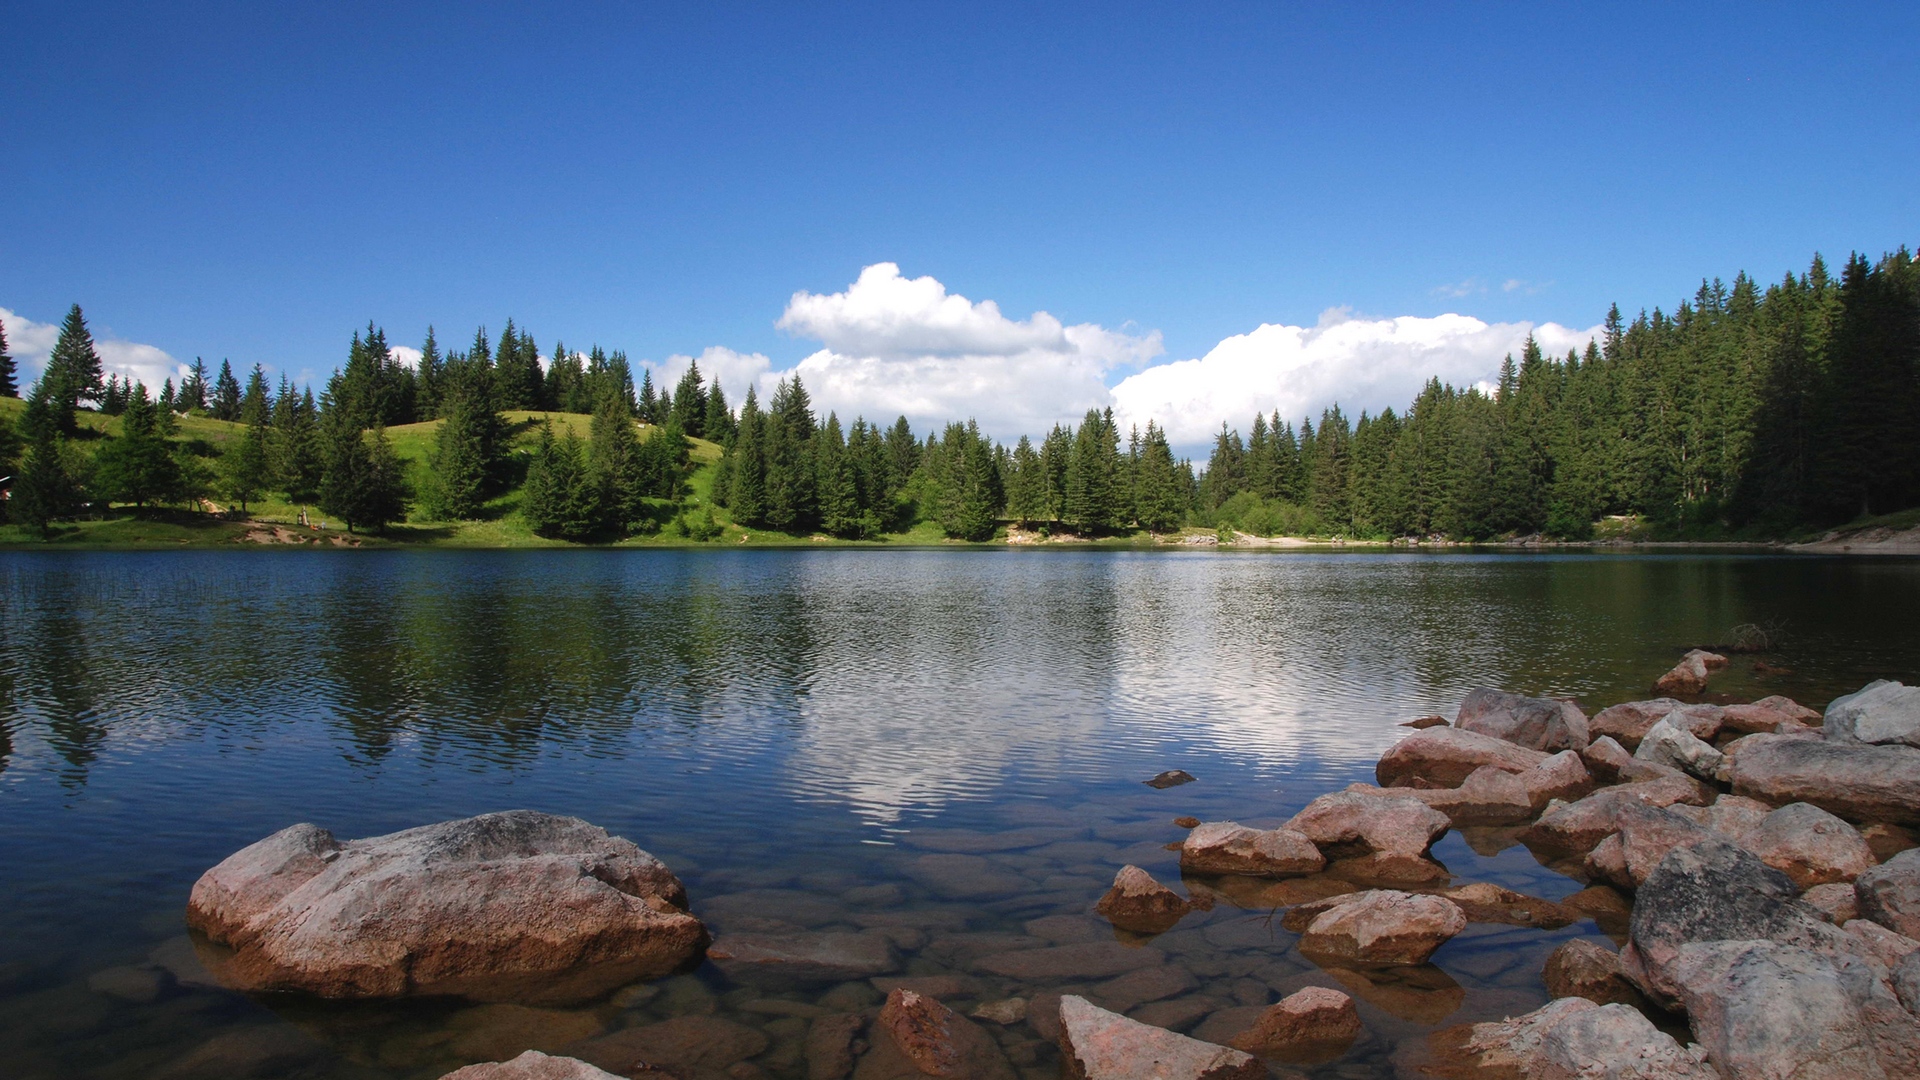 نگاره دلنشین از منظره ی خیره کننده جنگلی در کنار دریاچه